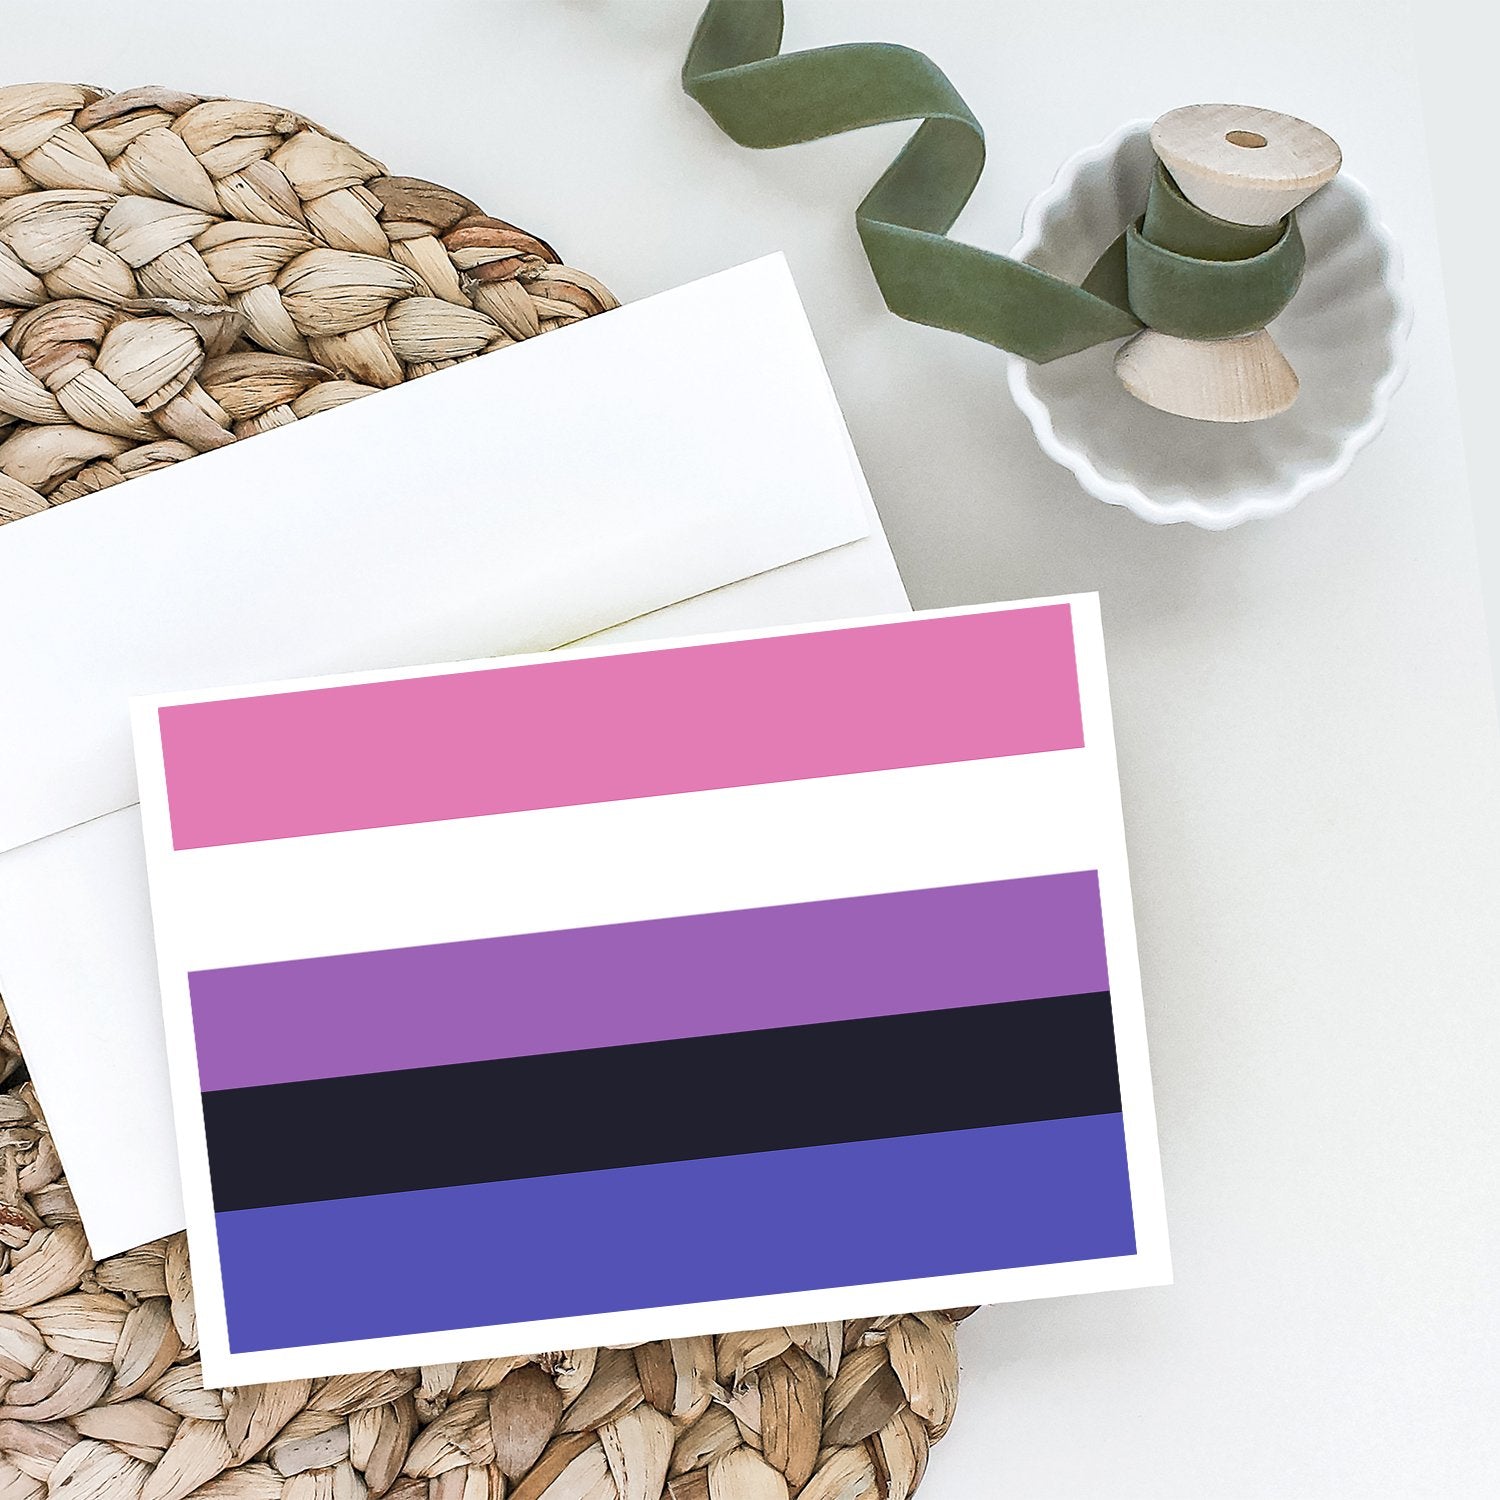 Buy this Genderfluid Pride Greeting Cards and Envelopes Pack of 8